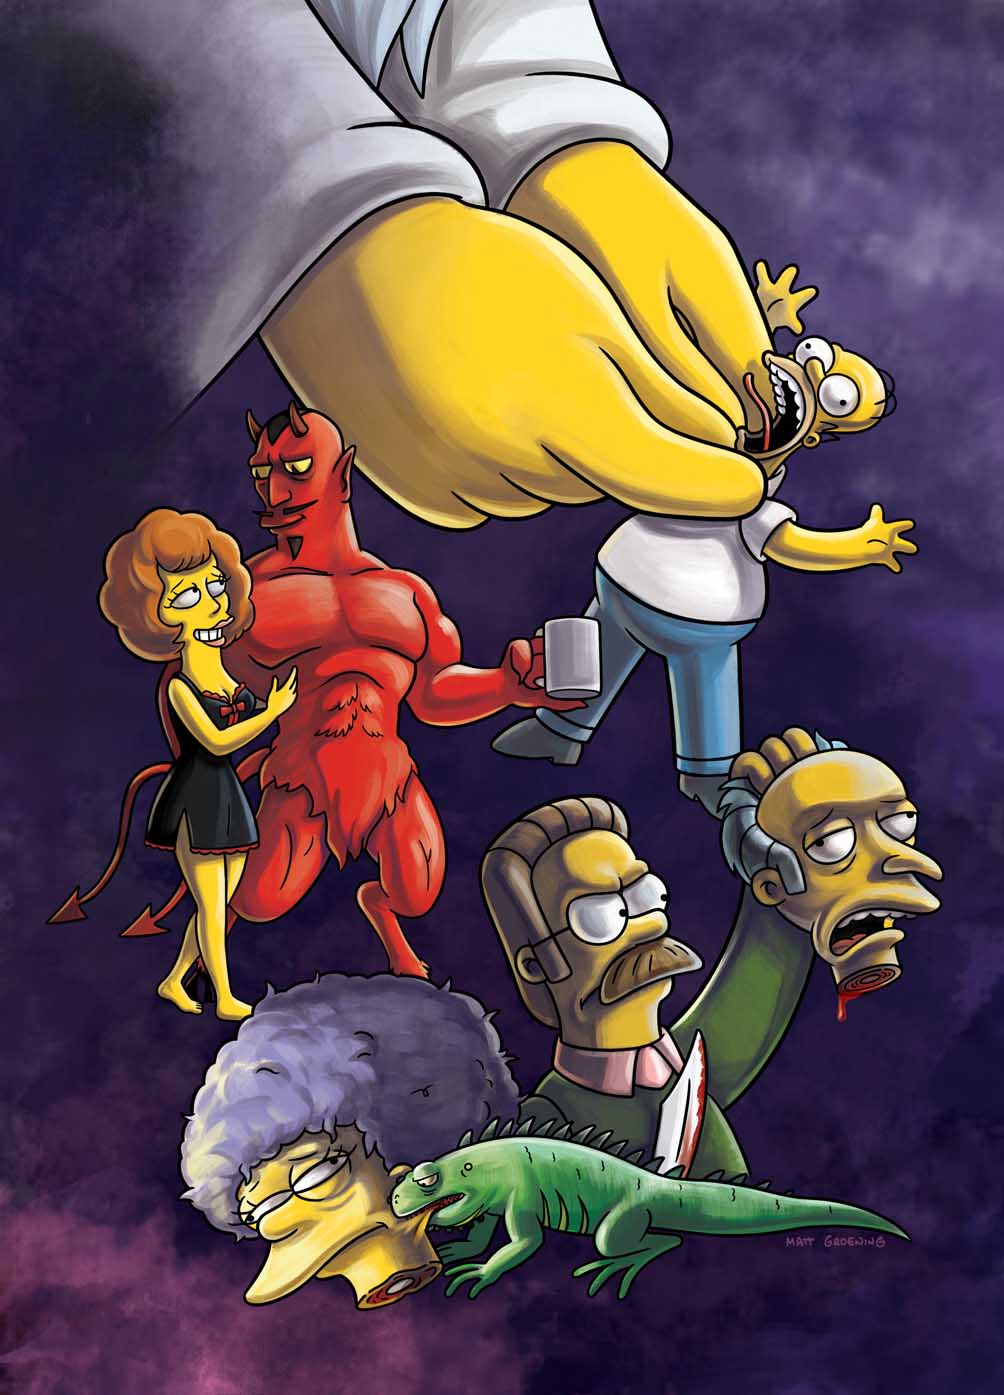 O Jogo de Terror dos Simpsons - Tribo Gamer